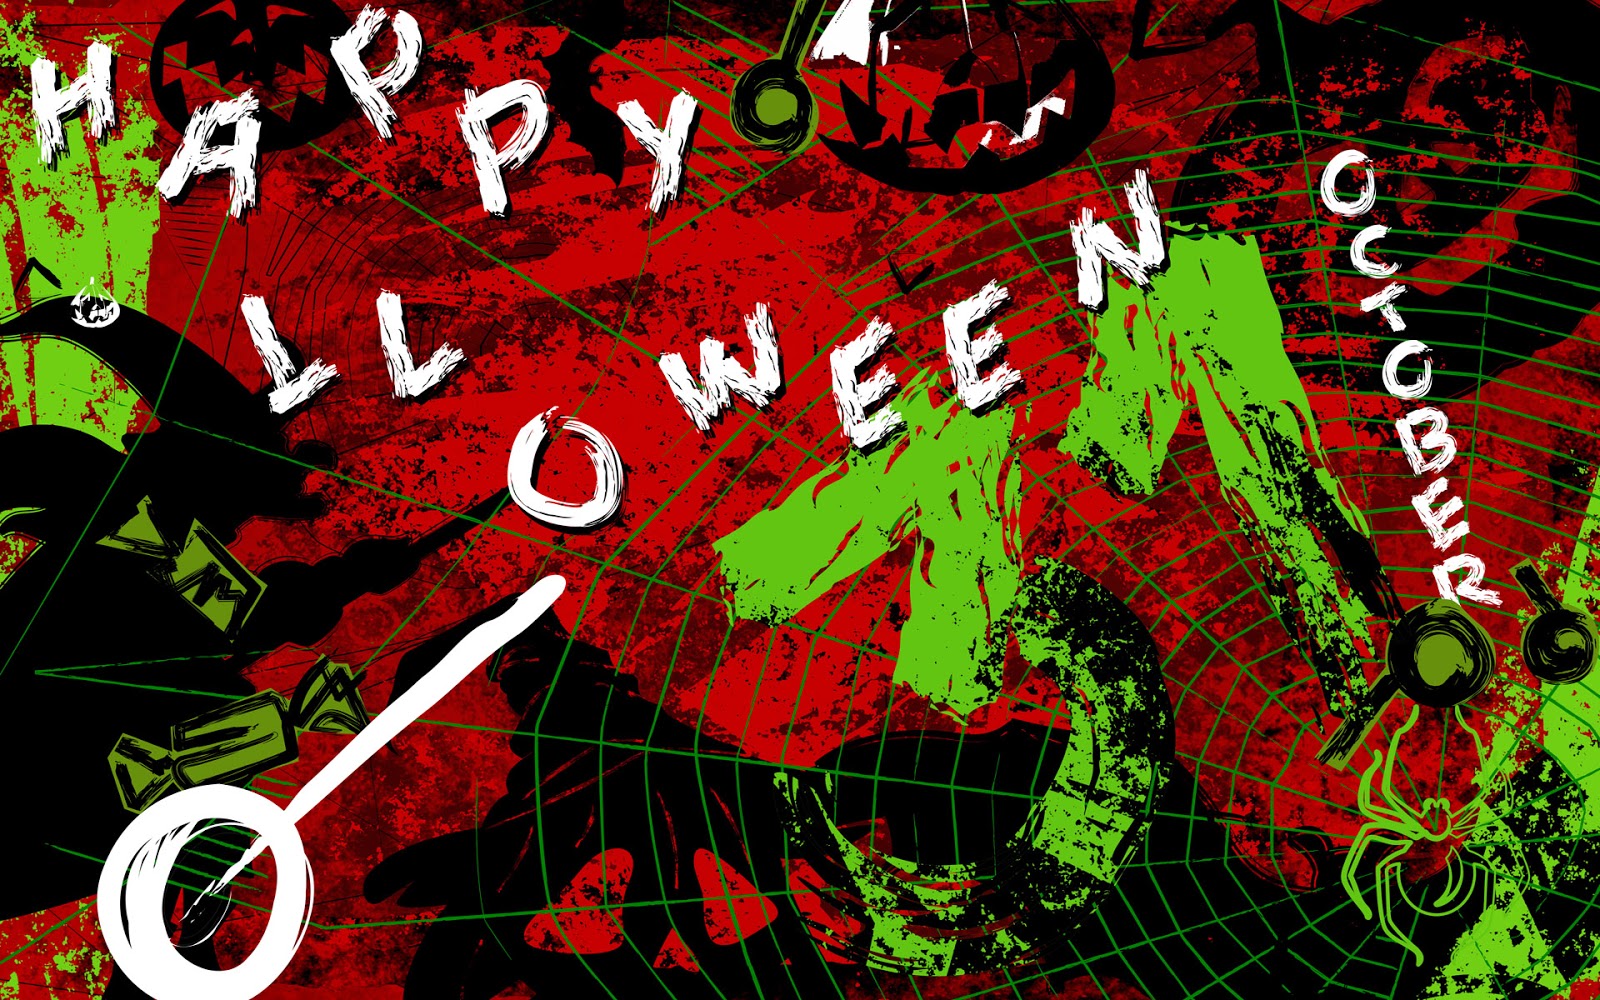 http://3.bp.blogspot.com/-BcVVa-oXLoc/UHbrFaT7aNI/AAAAAAAAHTA/gu6jjPtE_u8/s1600/Halloween+Wallpaper+Background+009.jpg